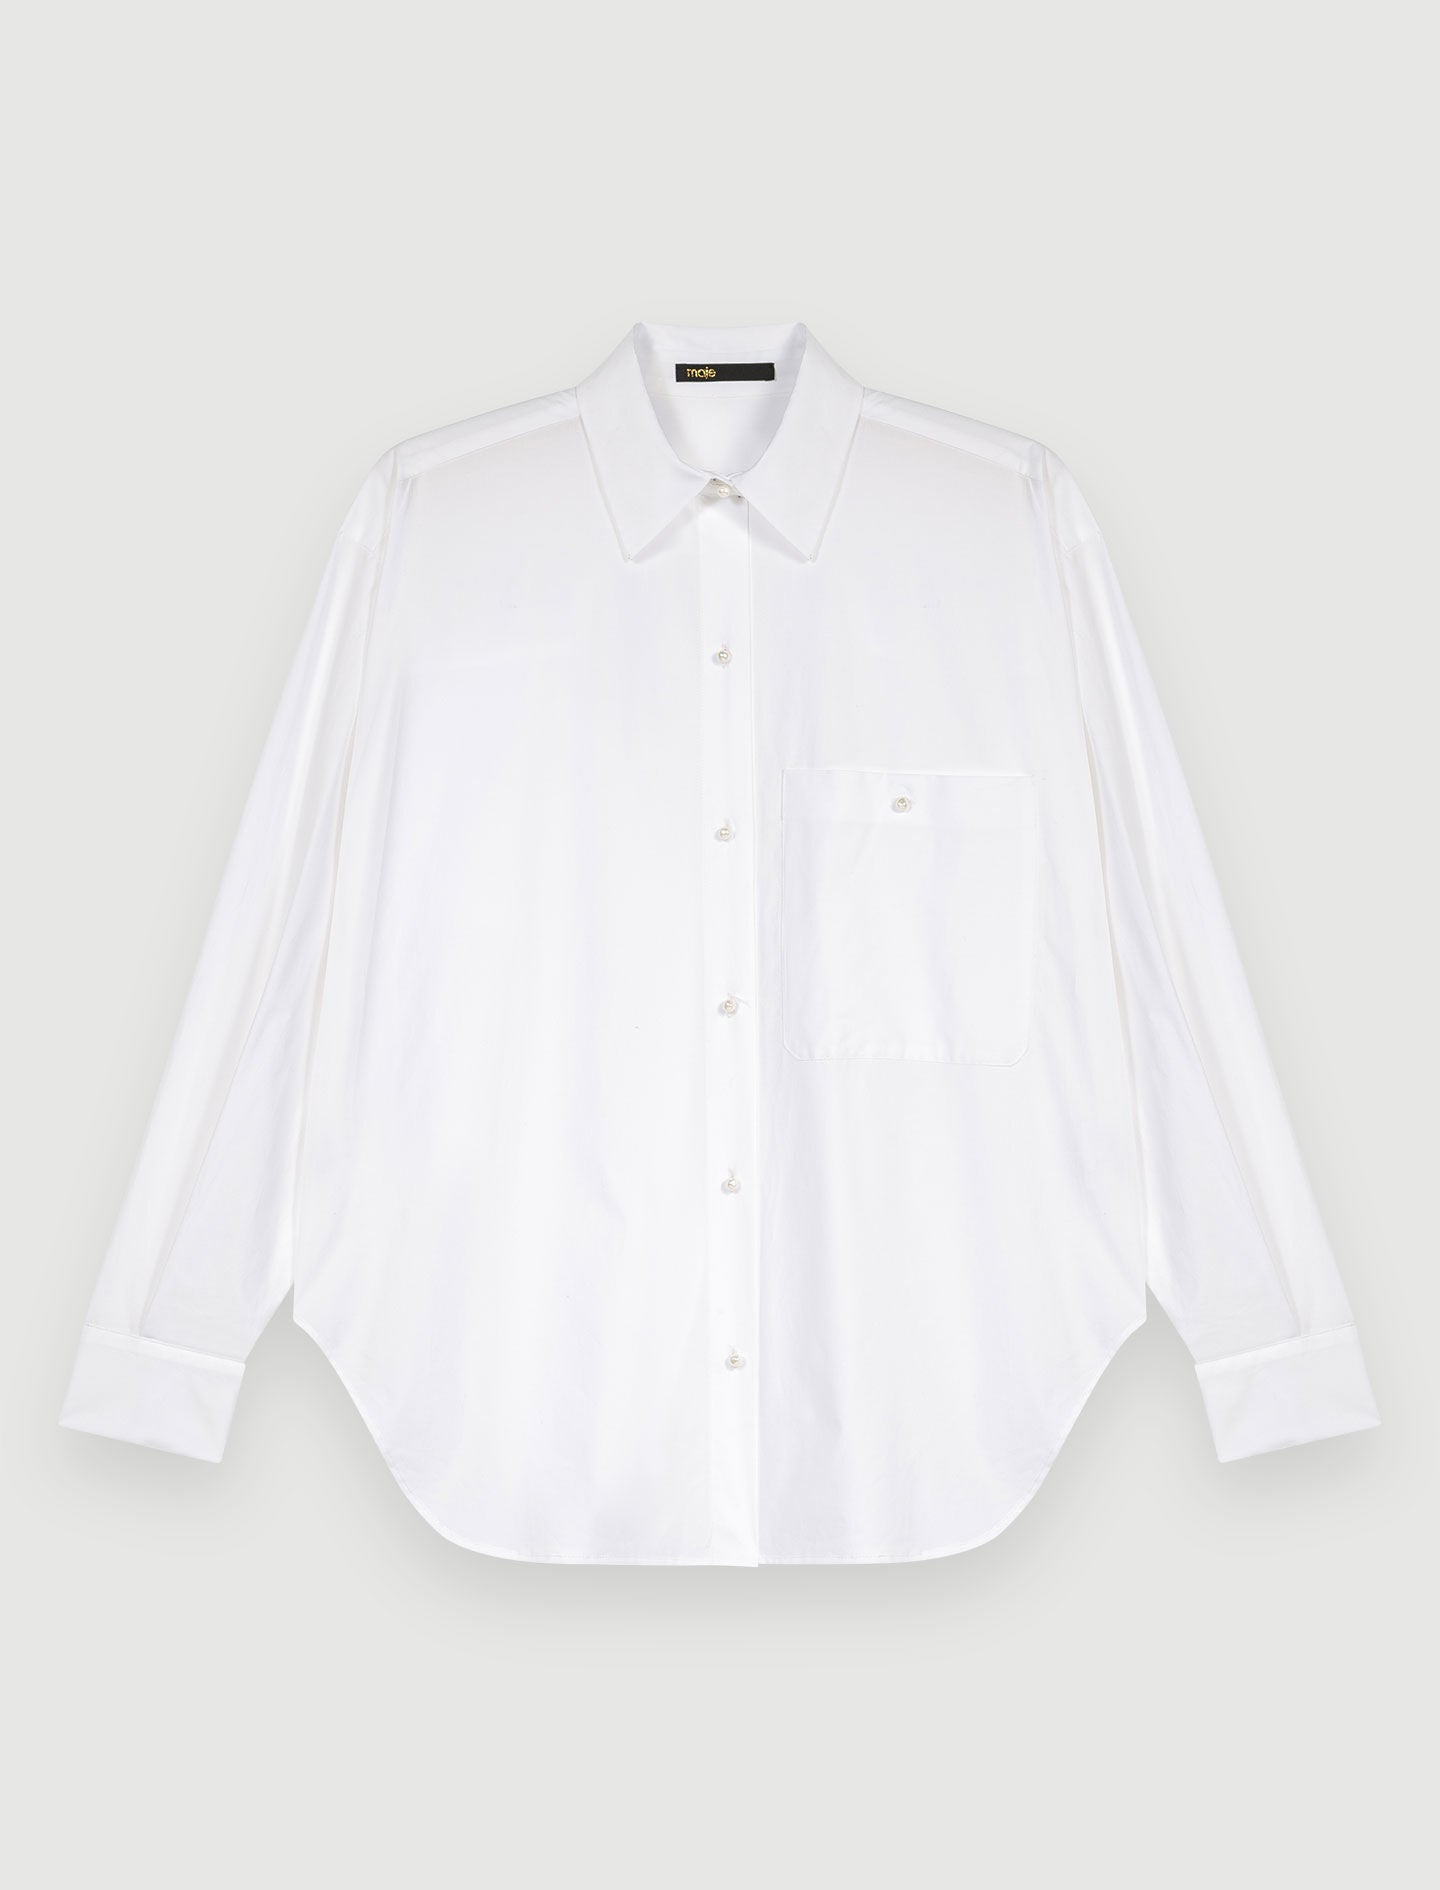 White-white cotton poplin shirt